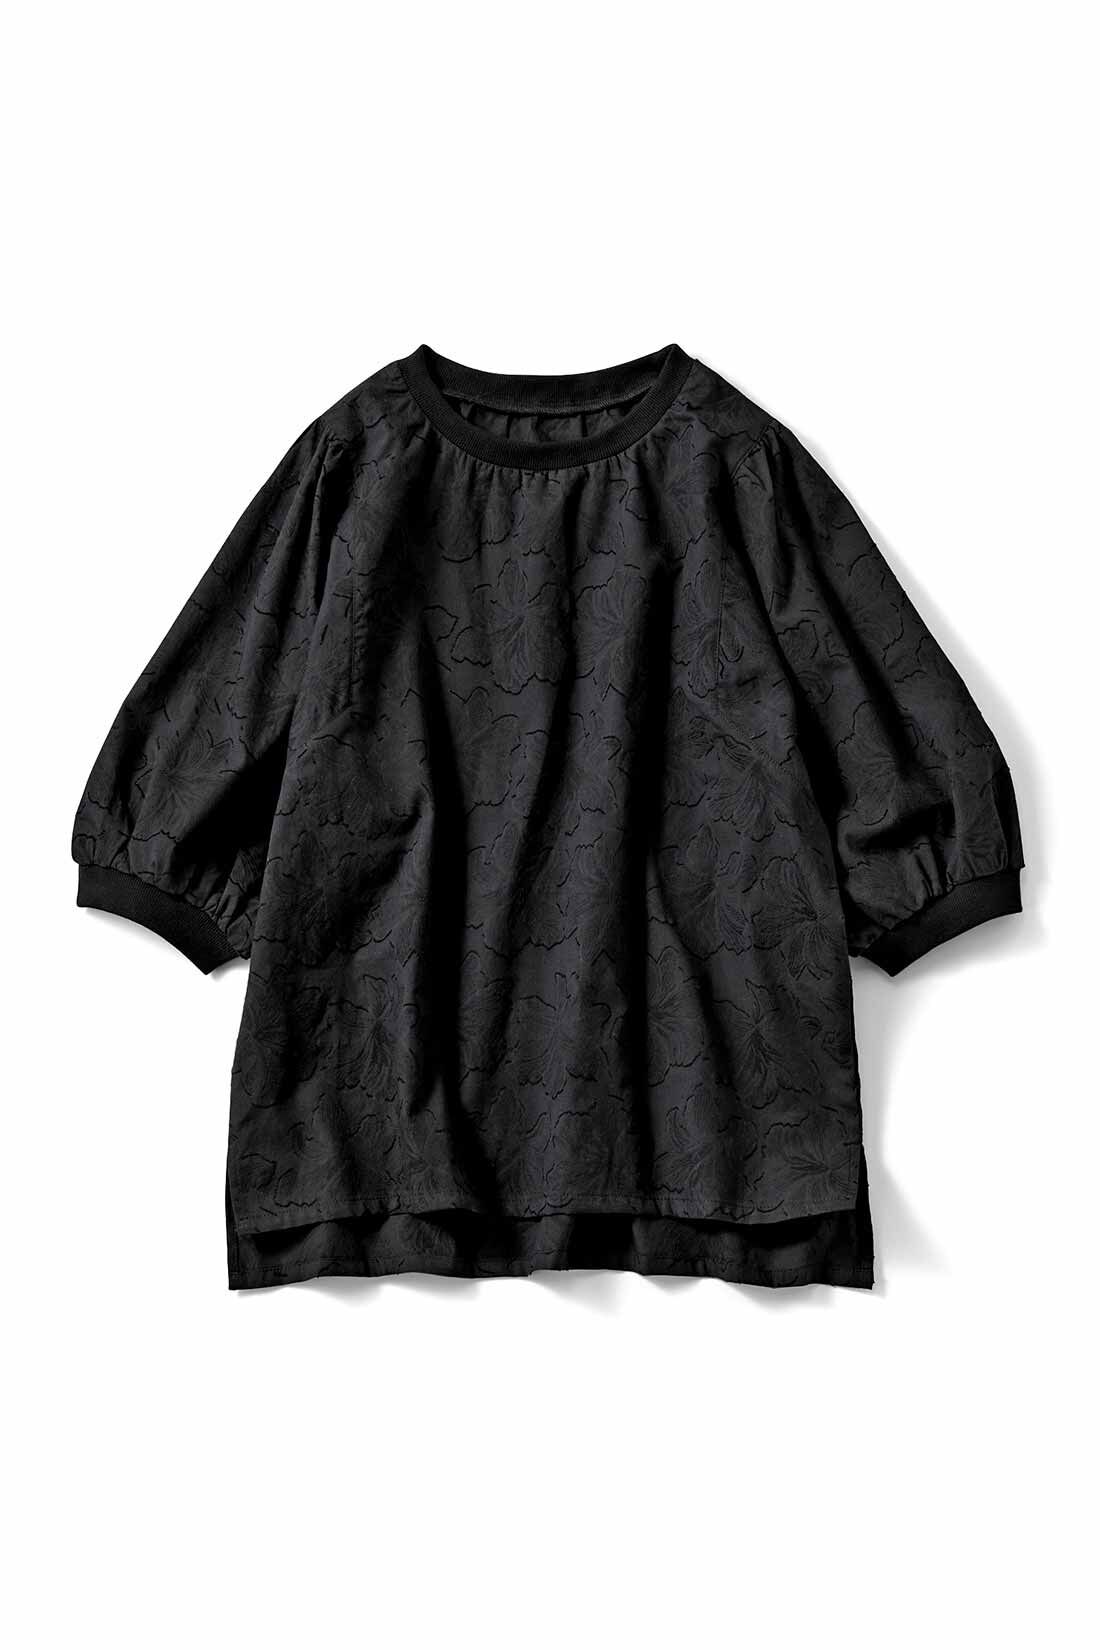 Real Stock|リブ イン コンフォート Tシャツ感覚で着られて上品見え 華やかコットンカットドビープルオーバー〈ブラック〉|ブラック